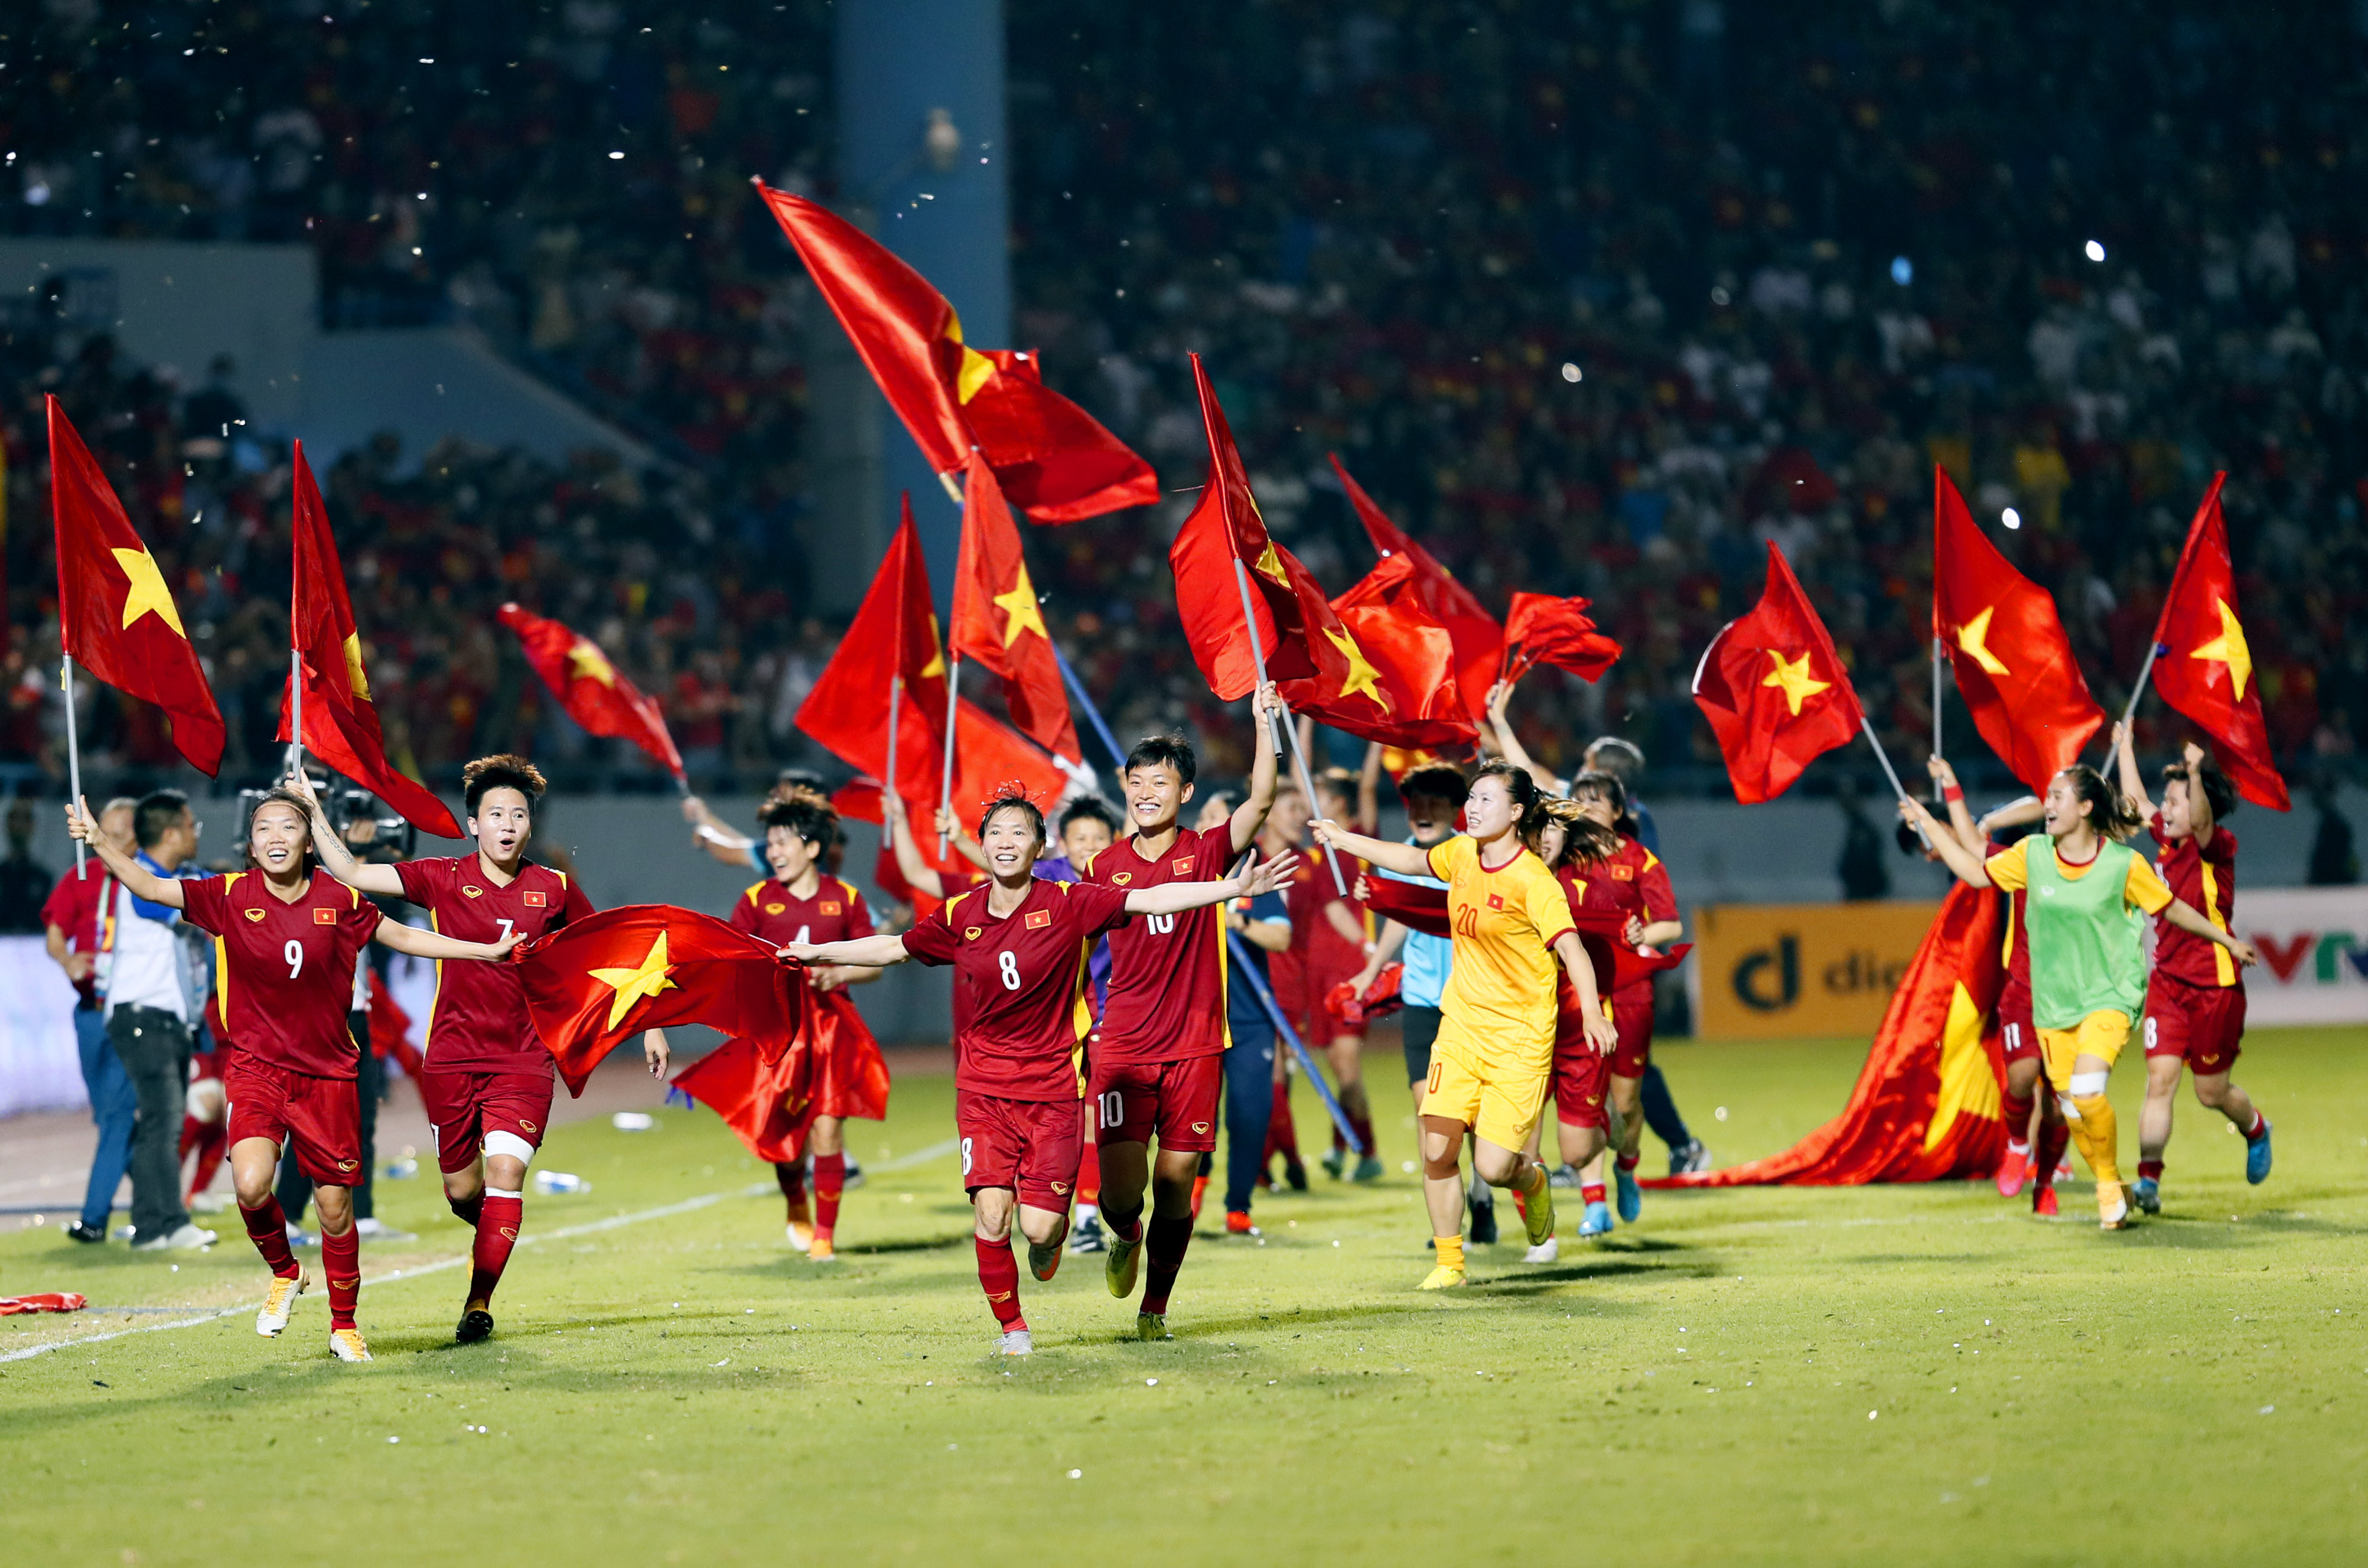 Tuyển nữ Việt Nam: Chào mừng đến với đội tuyển nữ Việt Nam! Đội chúng ta càng ngày càng tỏa sáng và trở thành niềm tự hào của cả nước. Hãy cùng xem hình ảnh của những cô gái tài năng này và cổ vũ cho đội tuyển nữ Việt Nam chiến thắng trên sân cỏ!